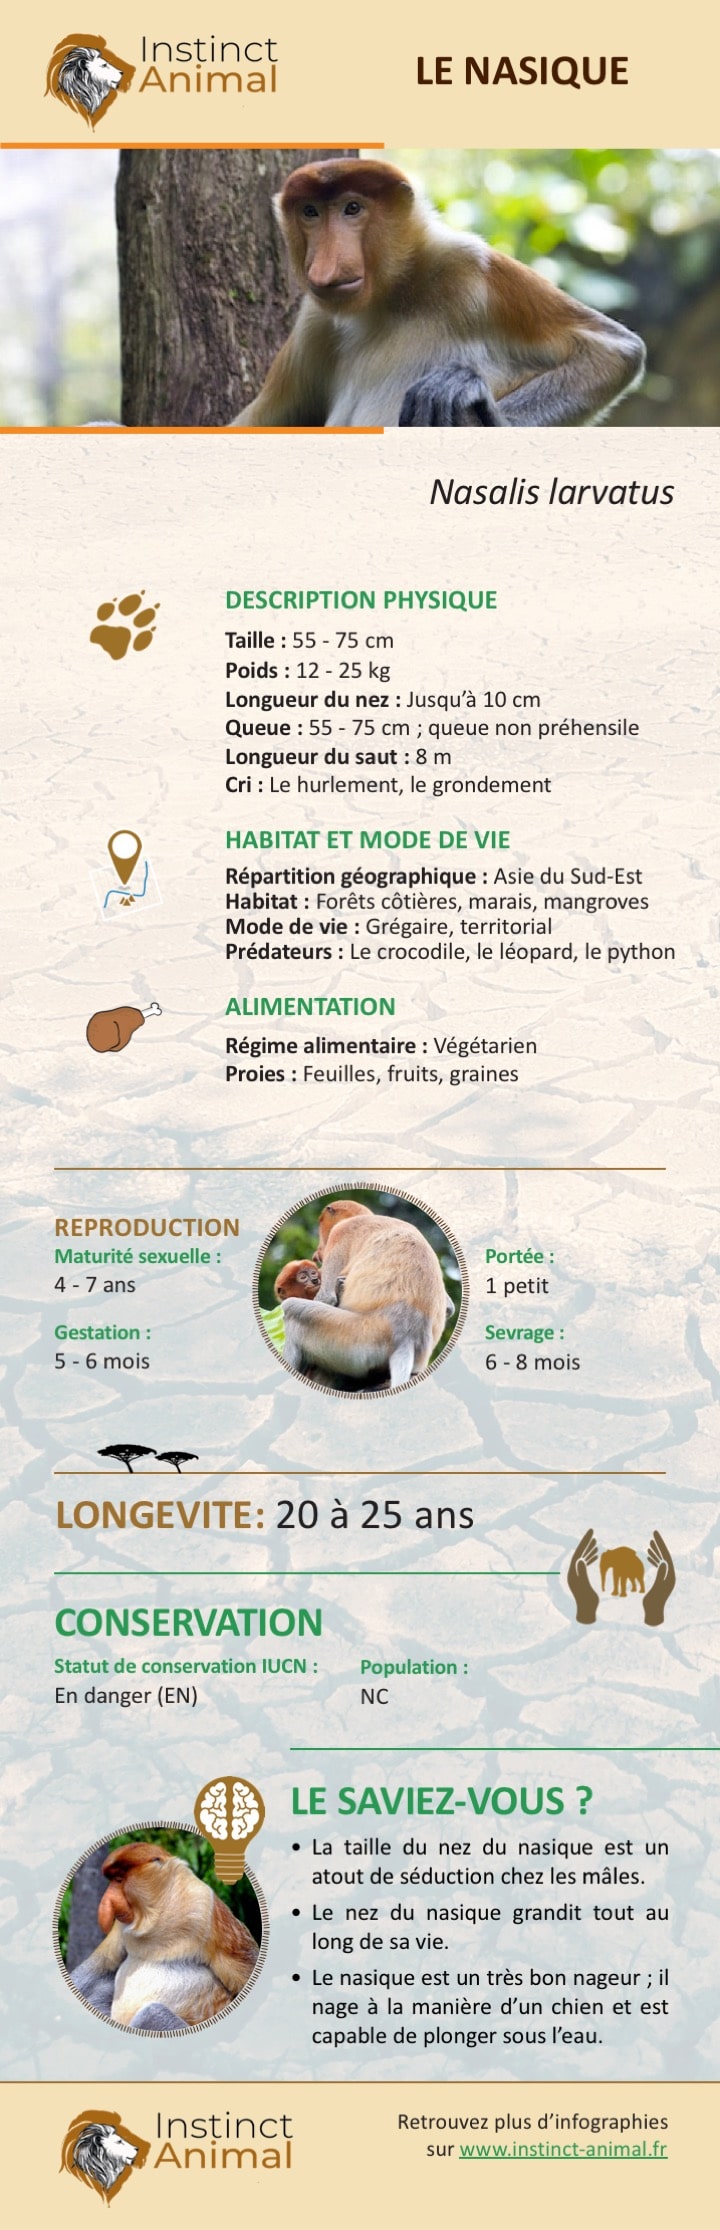 Description du nasique - Infographie - Instinct Animal